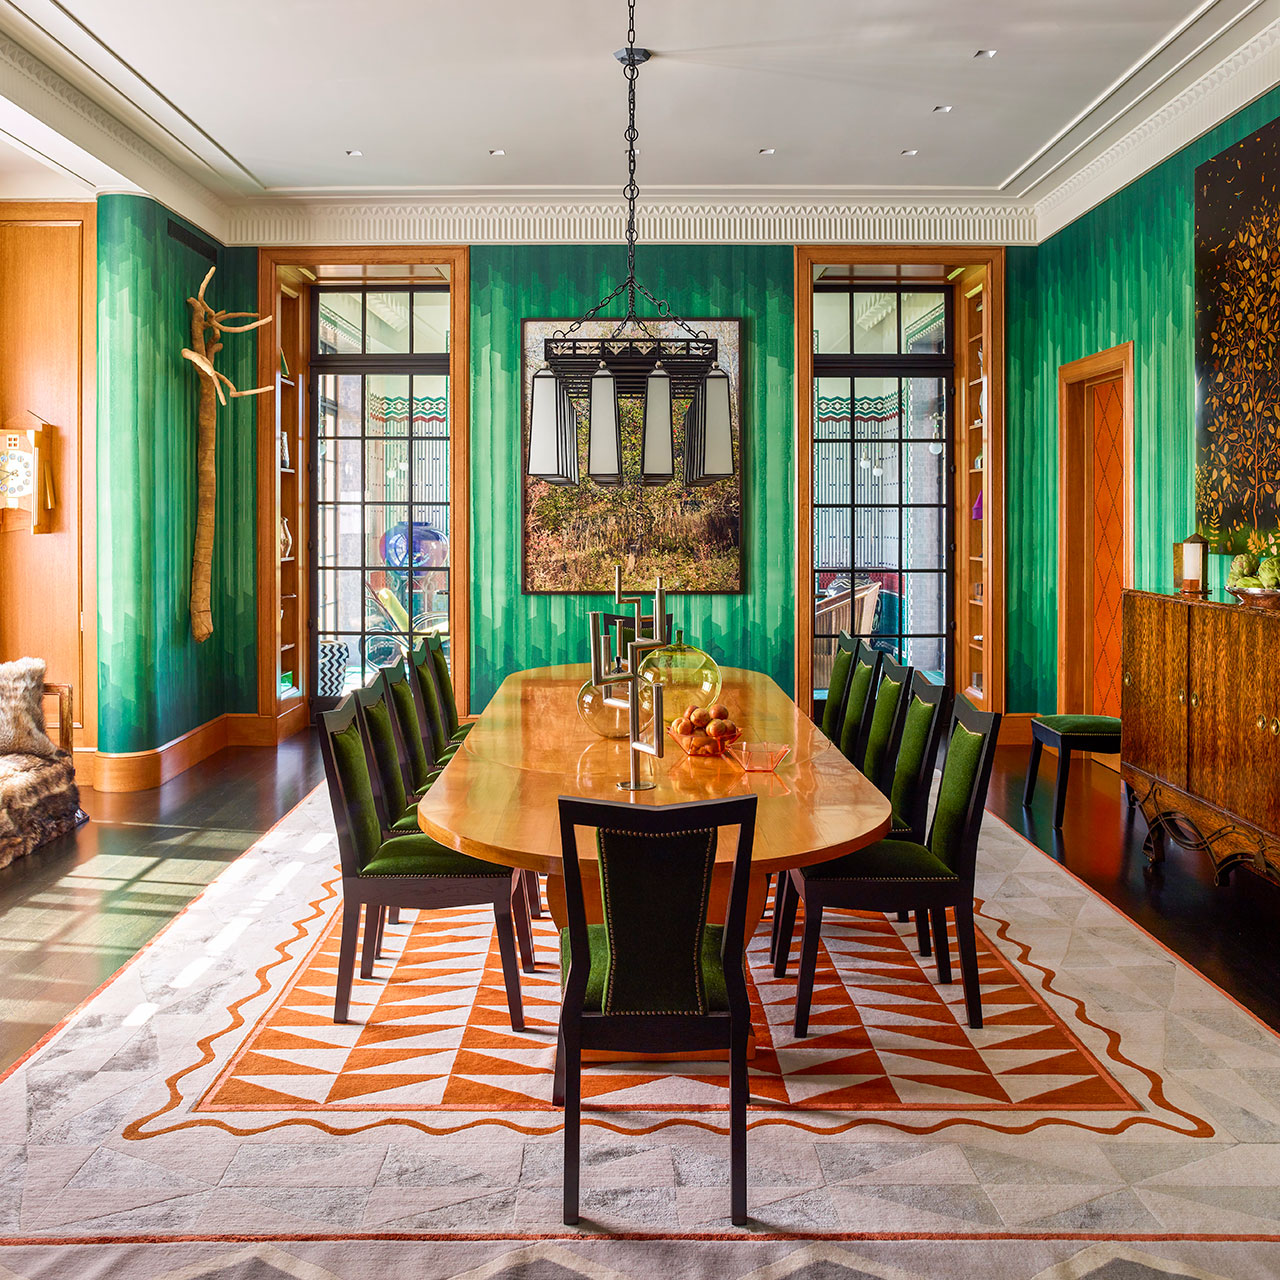 餐厅：PPA 室内设计的椅子基于 Josef Gočár 的设计； 丝绸和羊毛地毯的灵感来自 Gabriel Moiselet 的一幅画。 让-米歇尔·弗兰克桌子是 1935 年至 1940 年间为波恩家族的一个更大的委员会的一部分。桌子上有一对 Franz Hagenauer 的镀镍烛台、George Sakier（约 1930 年）和 Ingeborg 的花瓶Lundin 的 Apple 花瓶，为 Orrefors 设计（约 1959 年）。 房间的尽头挂着菲利普-洛卡·迪科西亚的照片 Upstate (2009) 摄影，埃里克·皮亚塞基 (Eric Piasecki)。